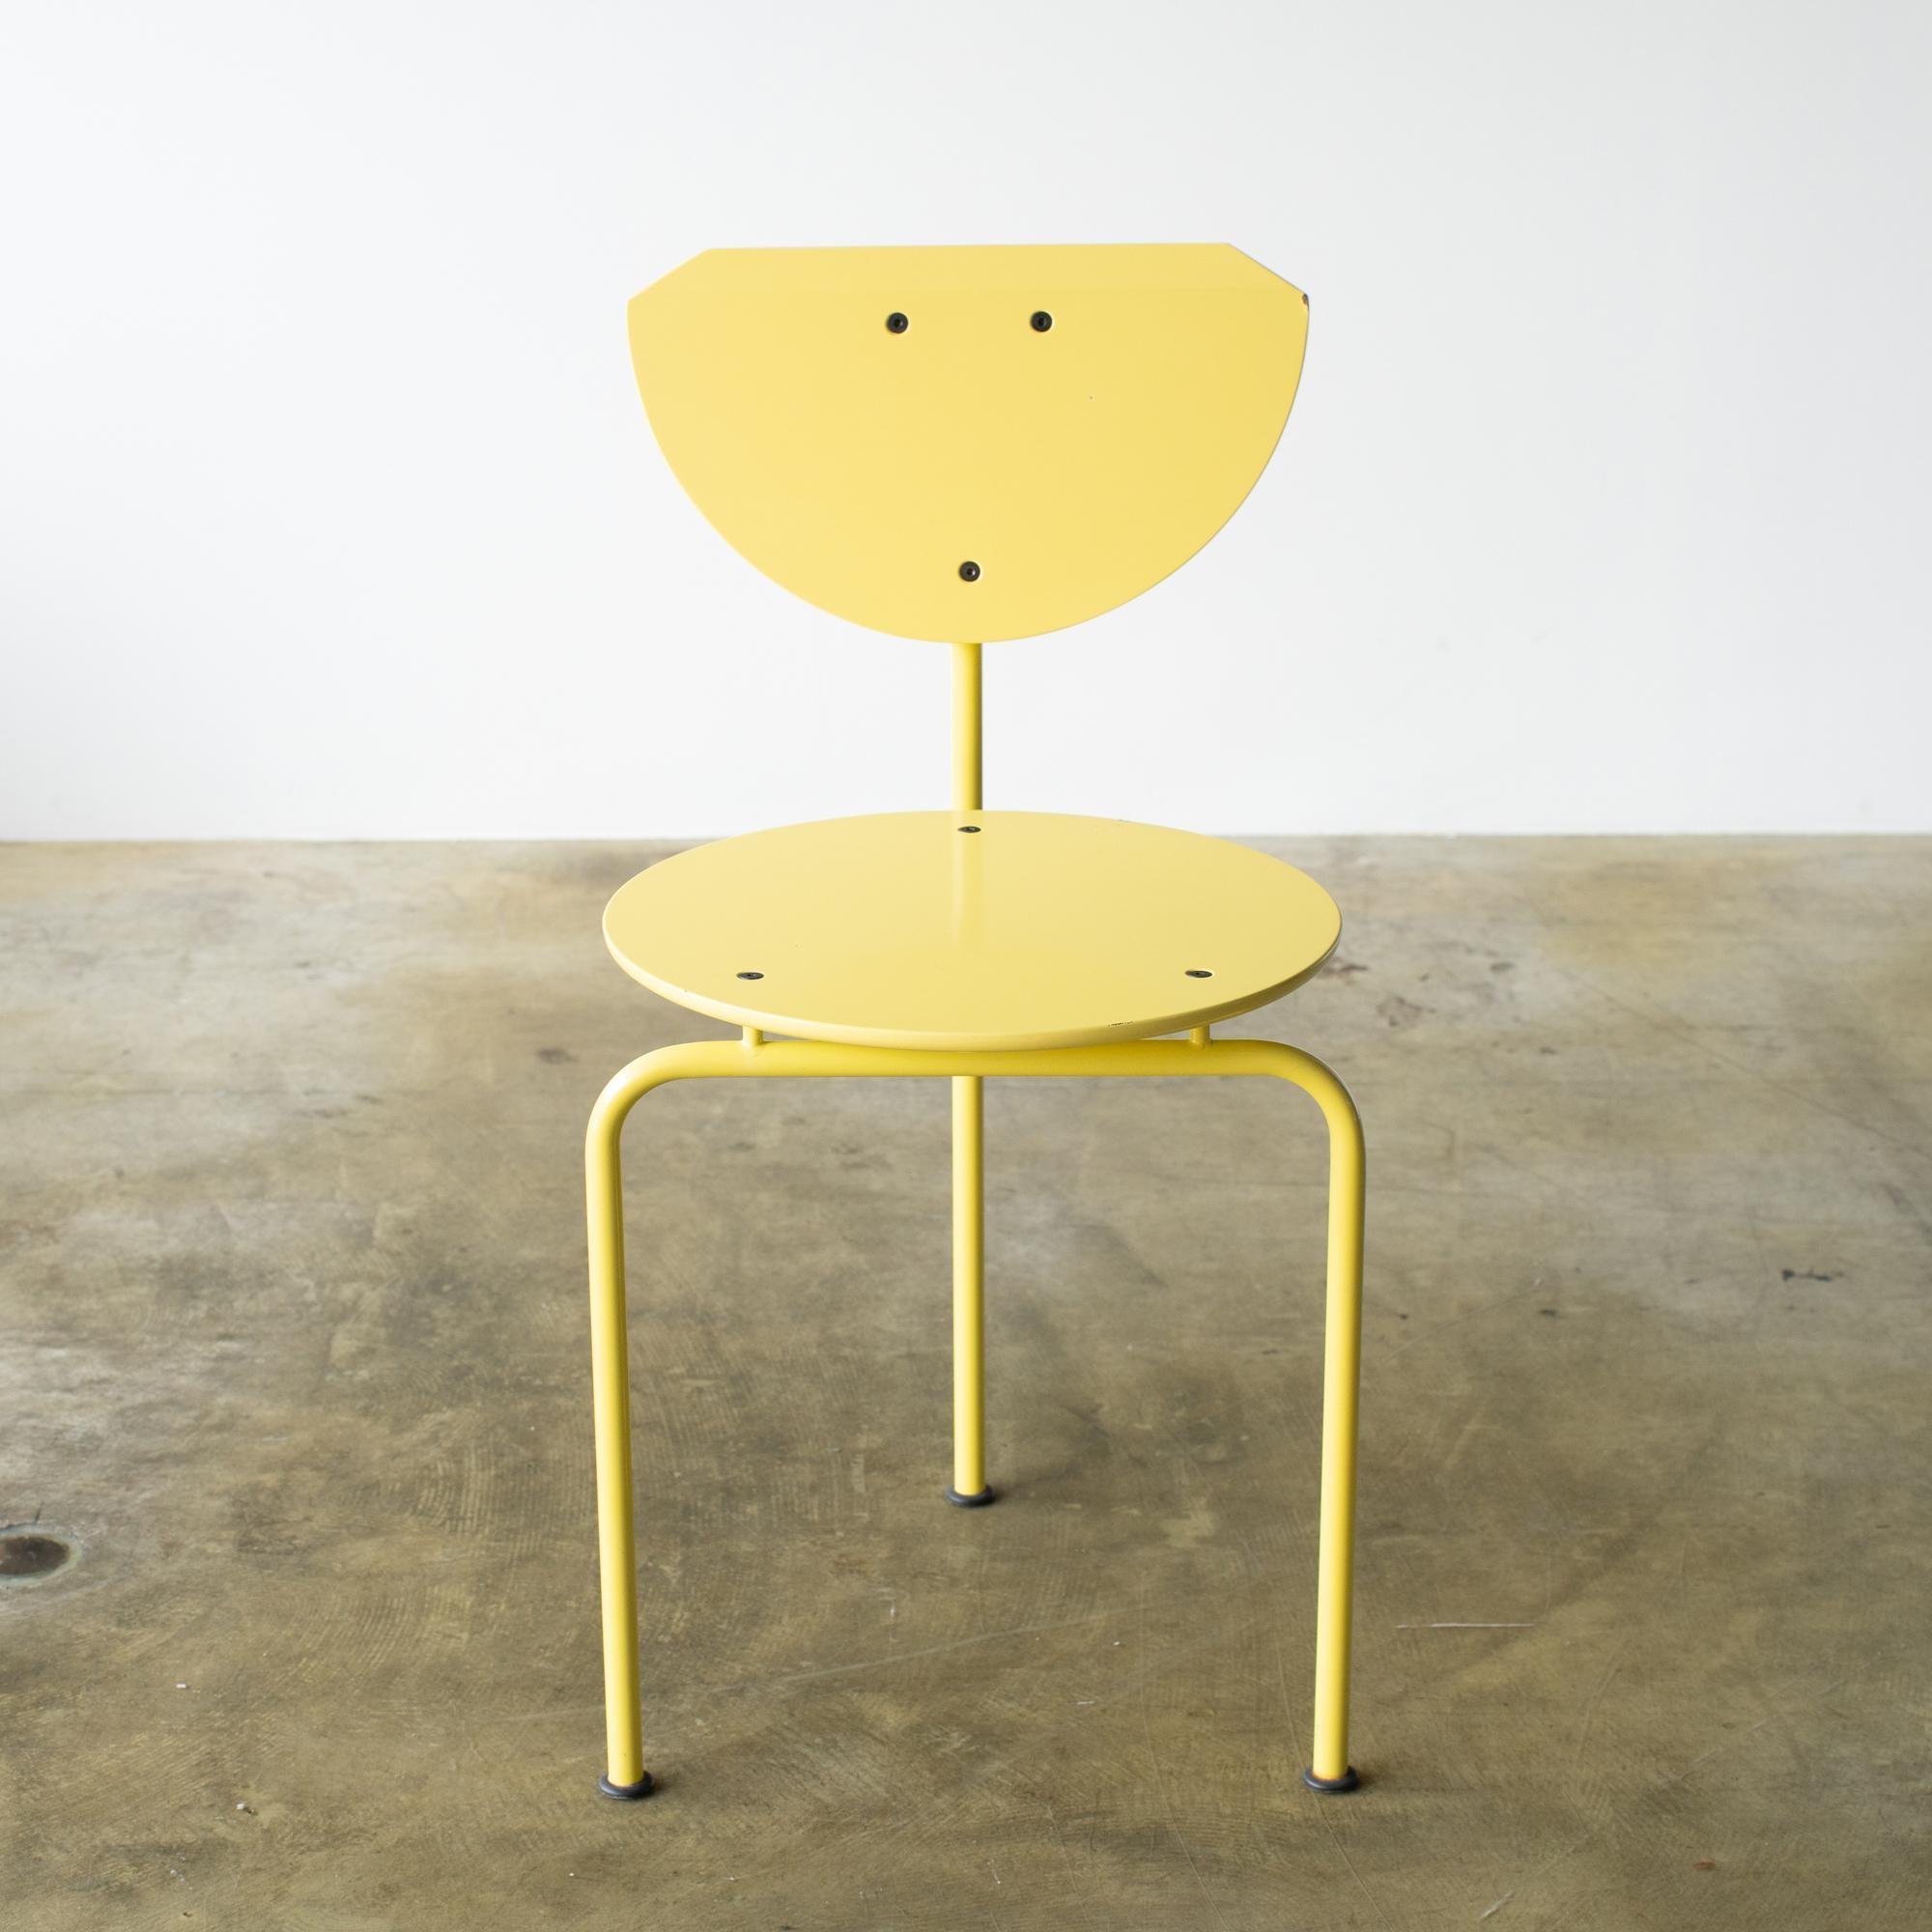 Alien-Stuhl, entworfen von Carlo Forcolini in den 80er Jahren. 
Sitz und Rückenlehne aus gelbem Holz. Der Rahmen ist aus lackiertem Stahl. Hergestellt von Alias Italy.